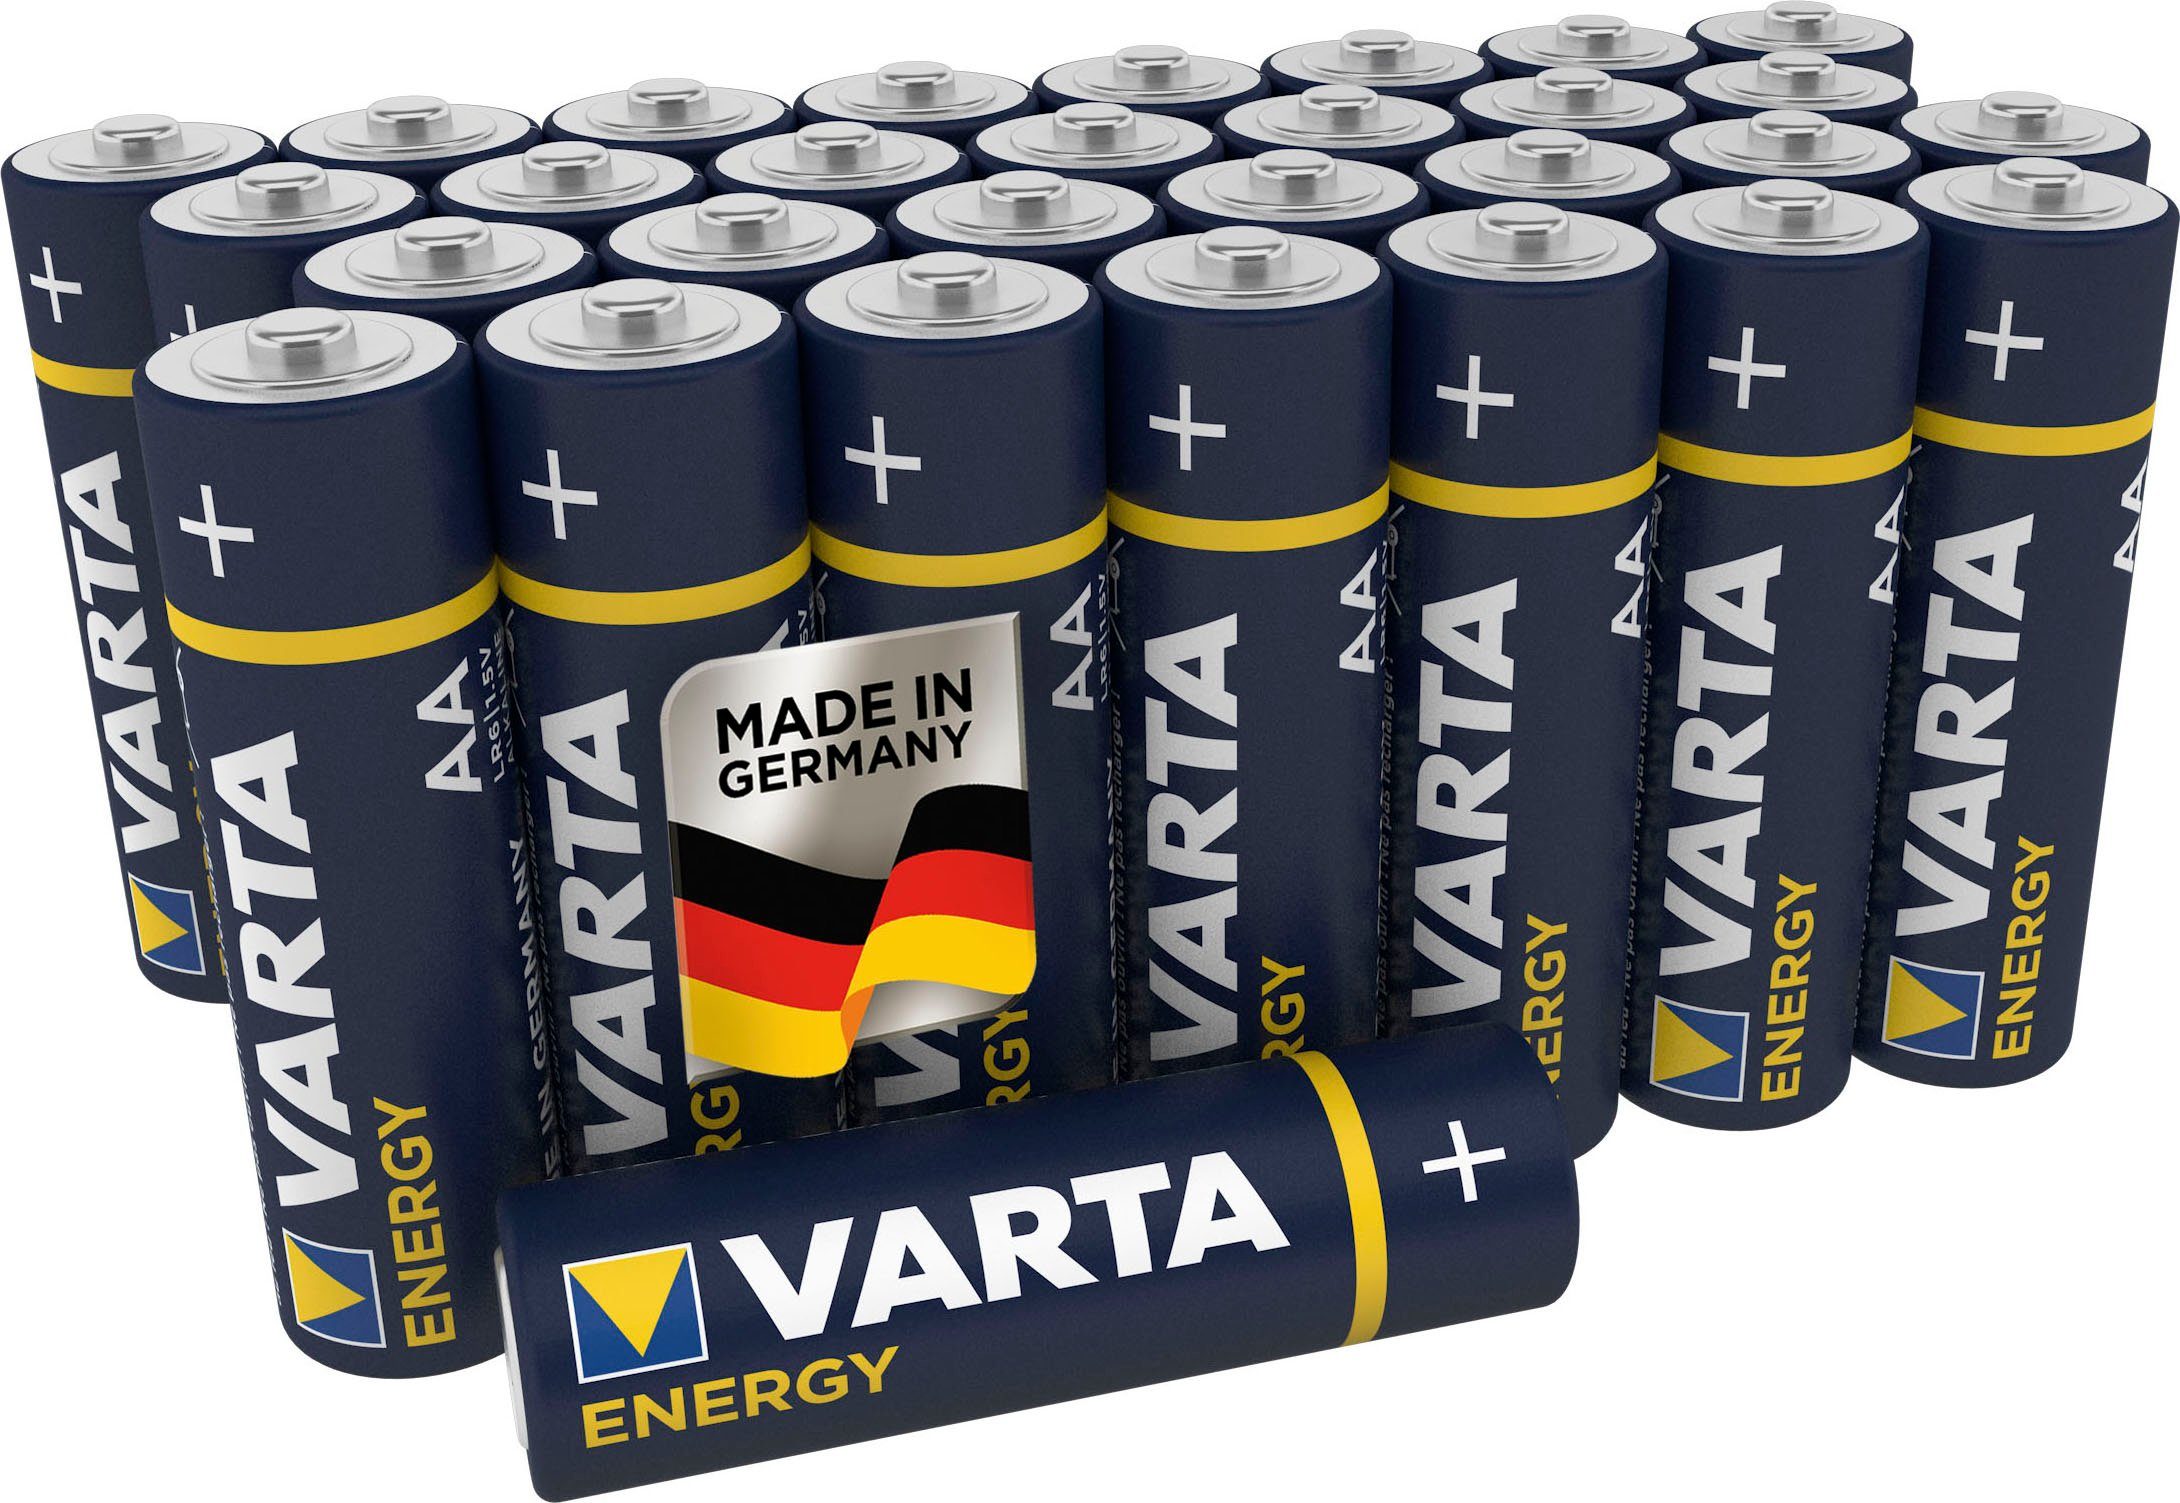 VARTA »Energy AA Mignon LR6 30er Pack Alkaline Batterien - Made in Germany  - ideal für Spielzeug Taschenlampen und andere batteriebetriebene Geräte«  Batterie, LR06 (1,5 V) online kaufen | OTTO